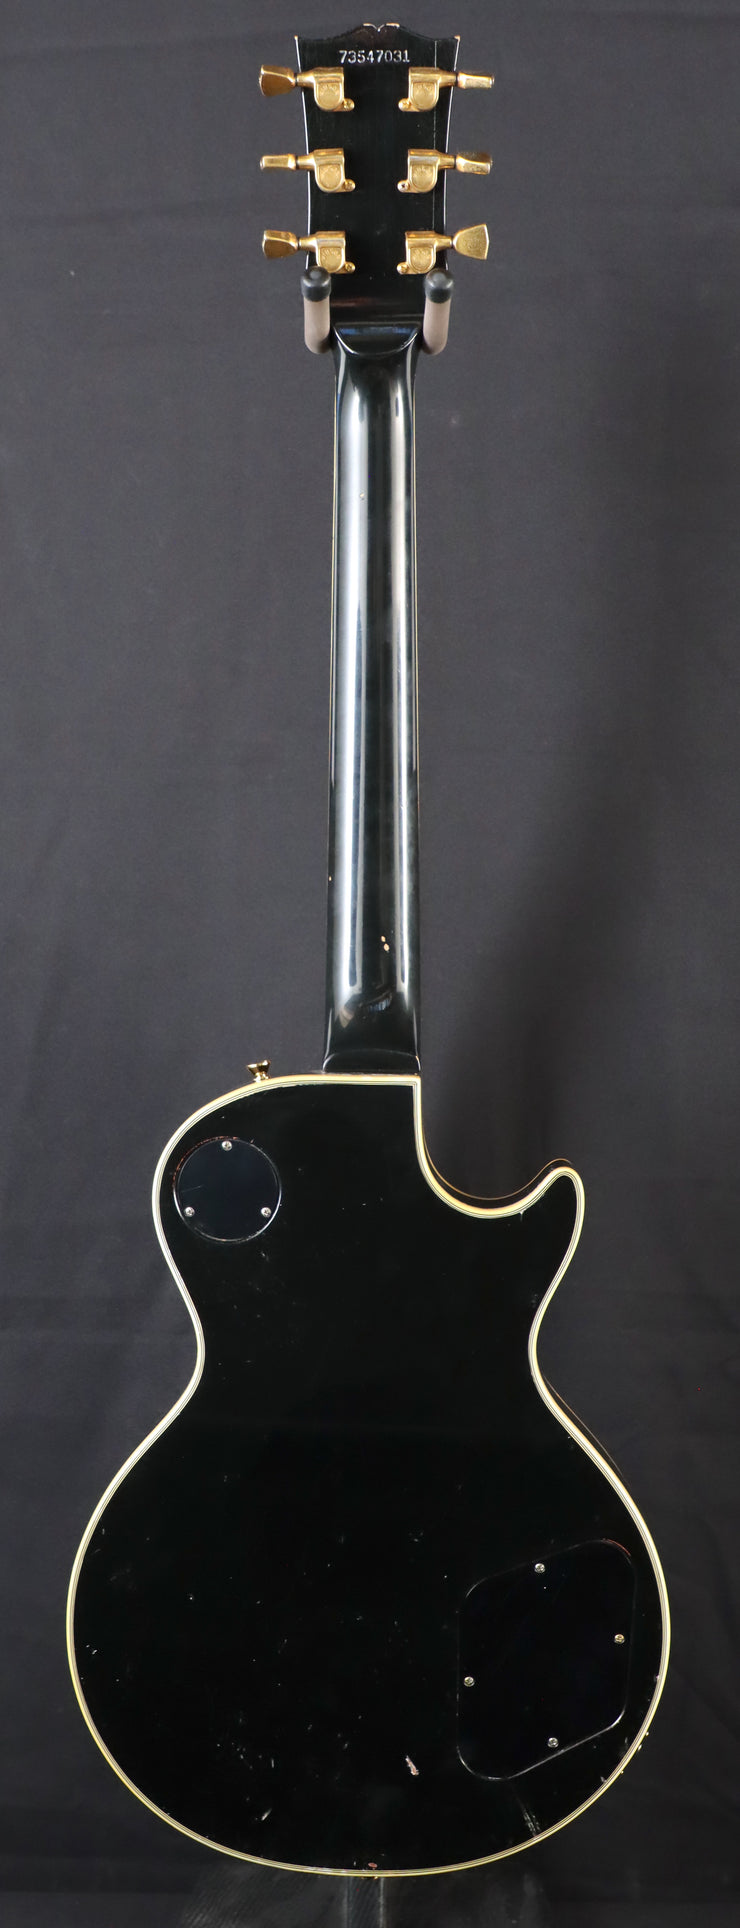 Gibson Les Paul Custom - Left Handed